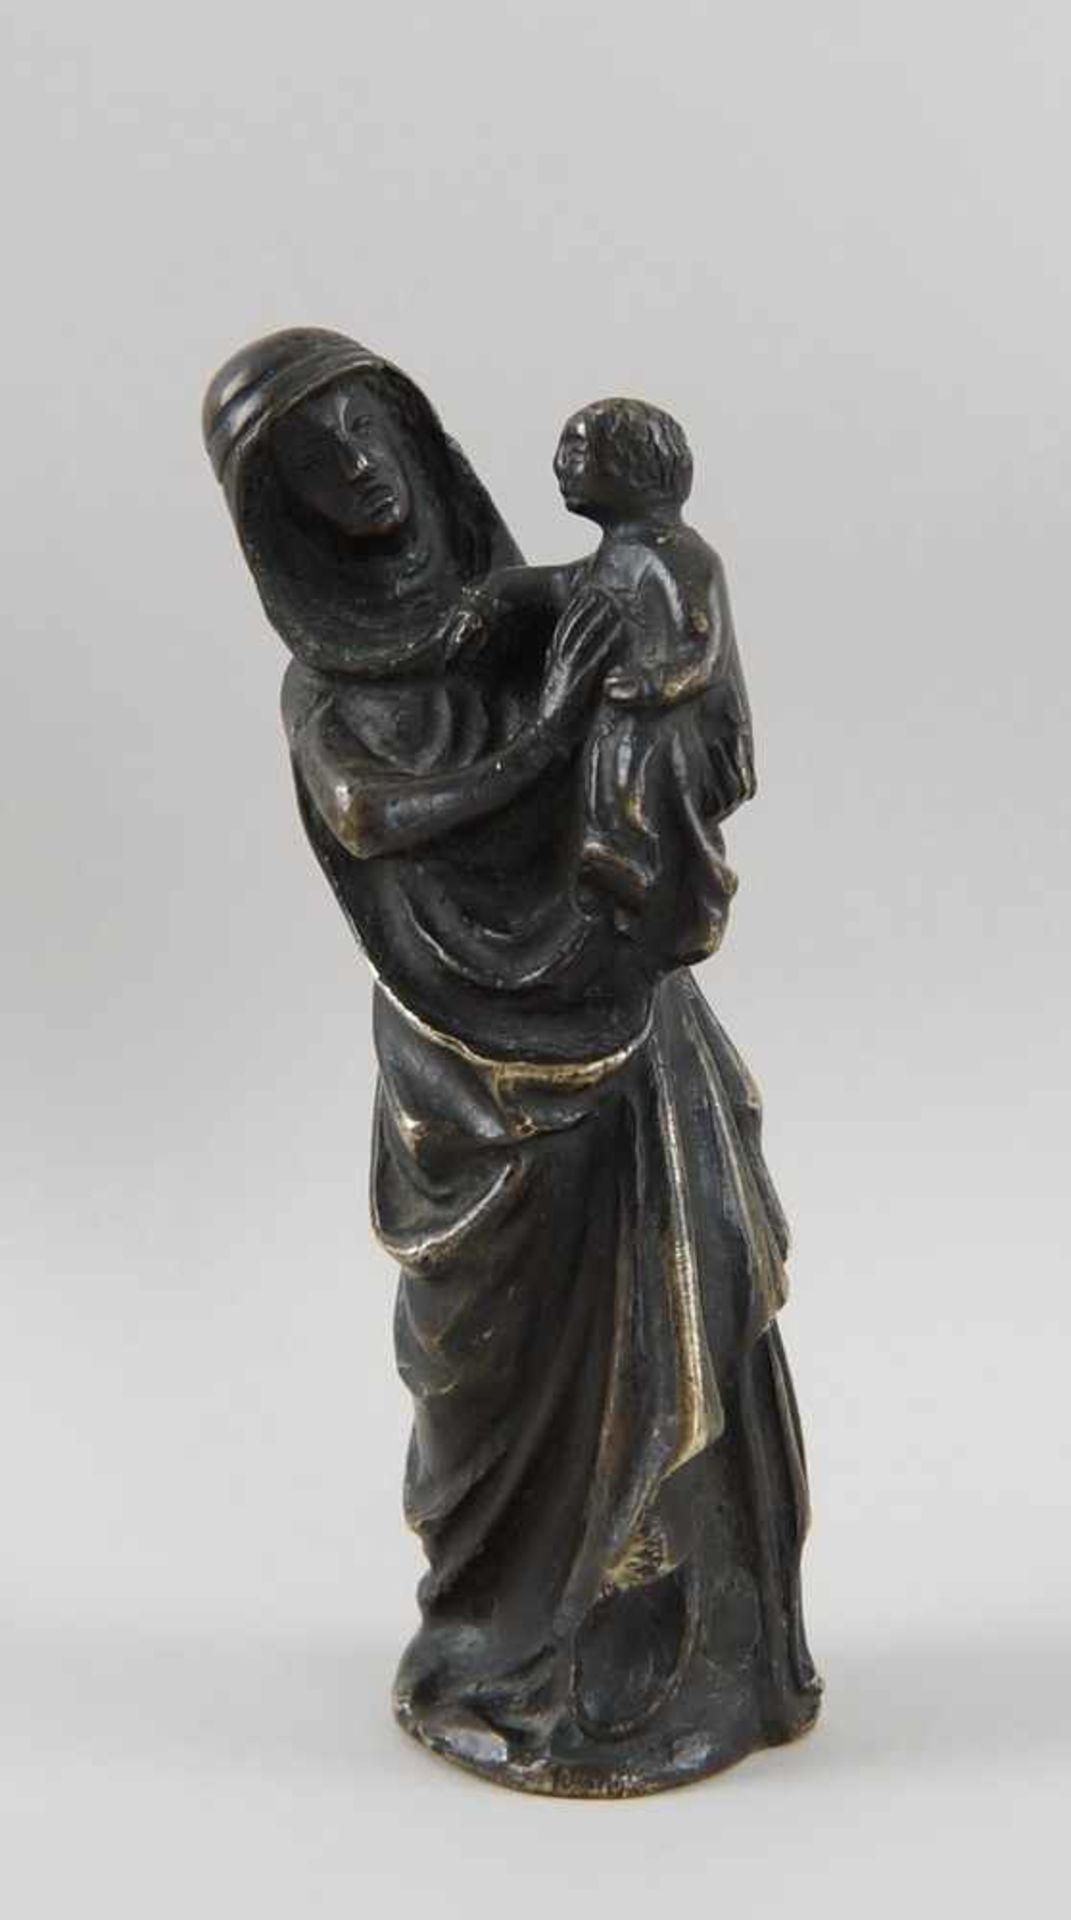 Gotische Skulptur einer Madonna mit Kind, Bronze, wohl um 1500, H 17,5 cm- - -24.00 % buyer's